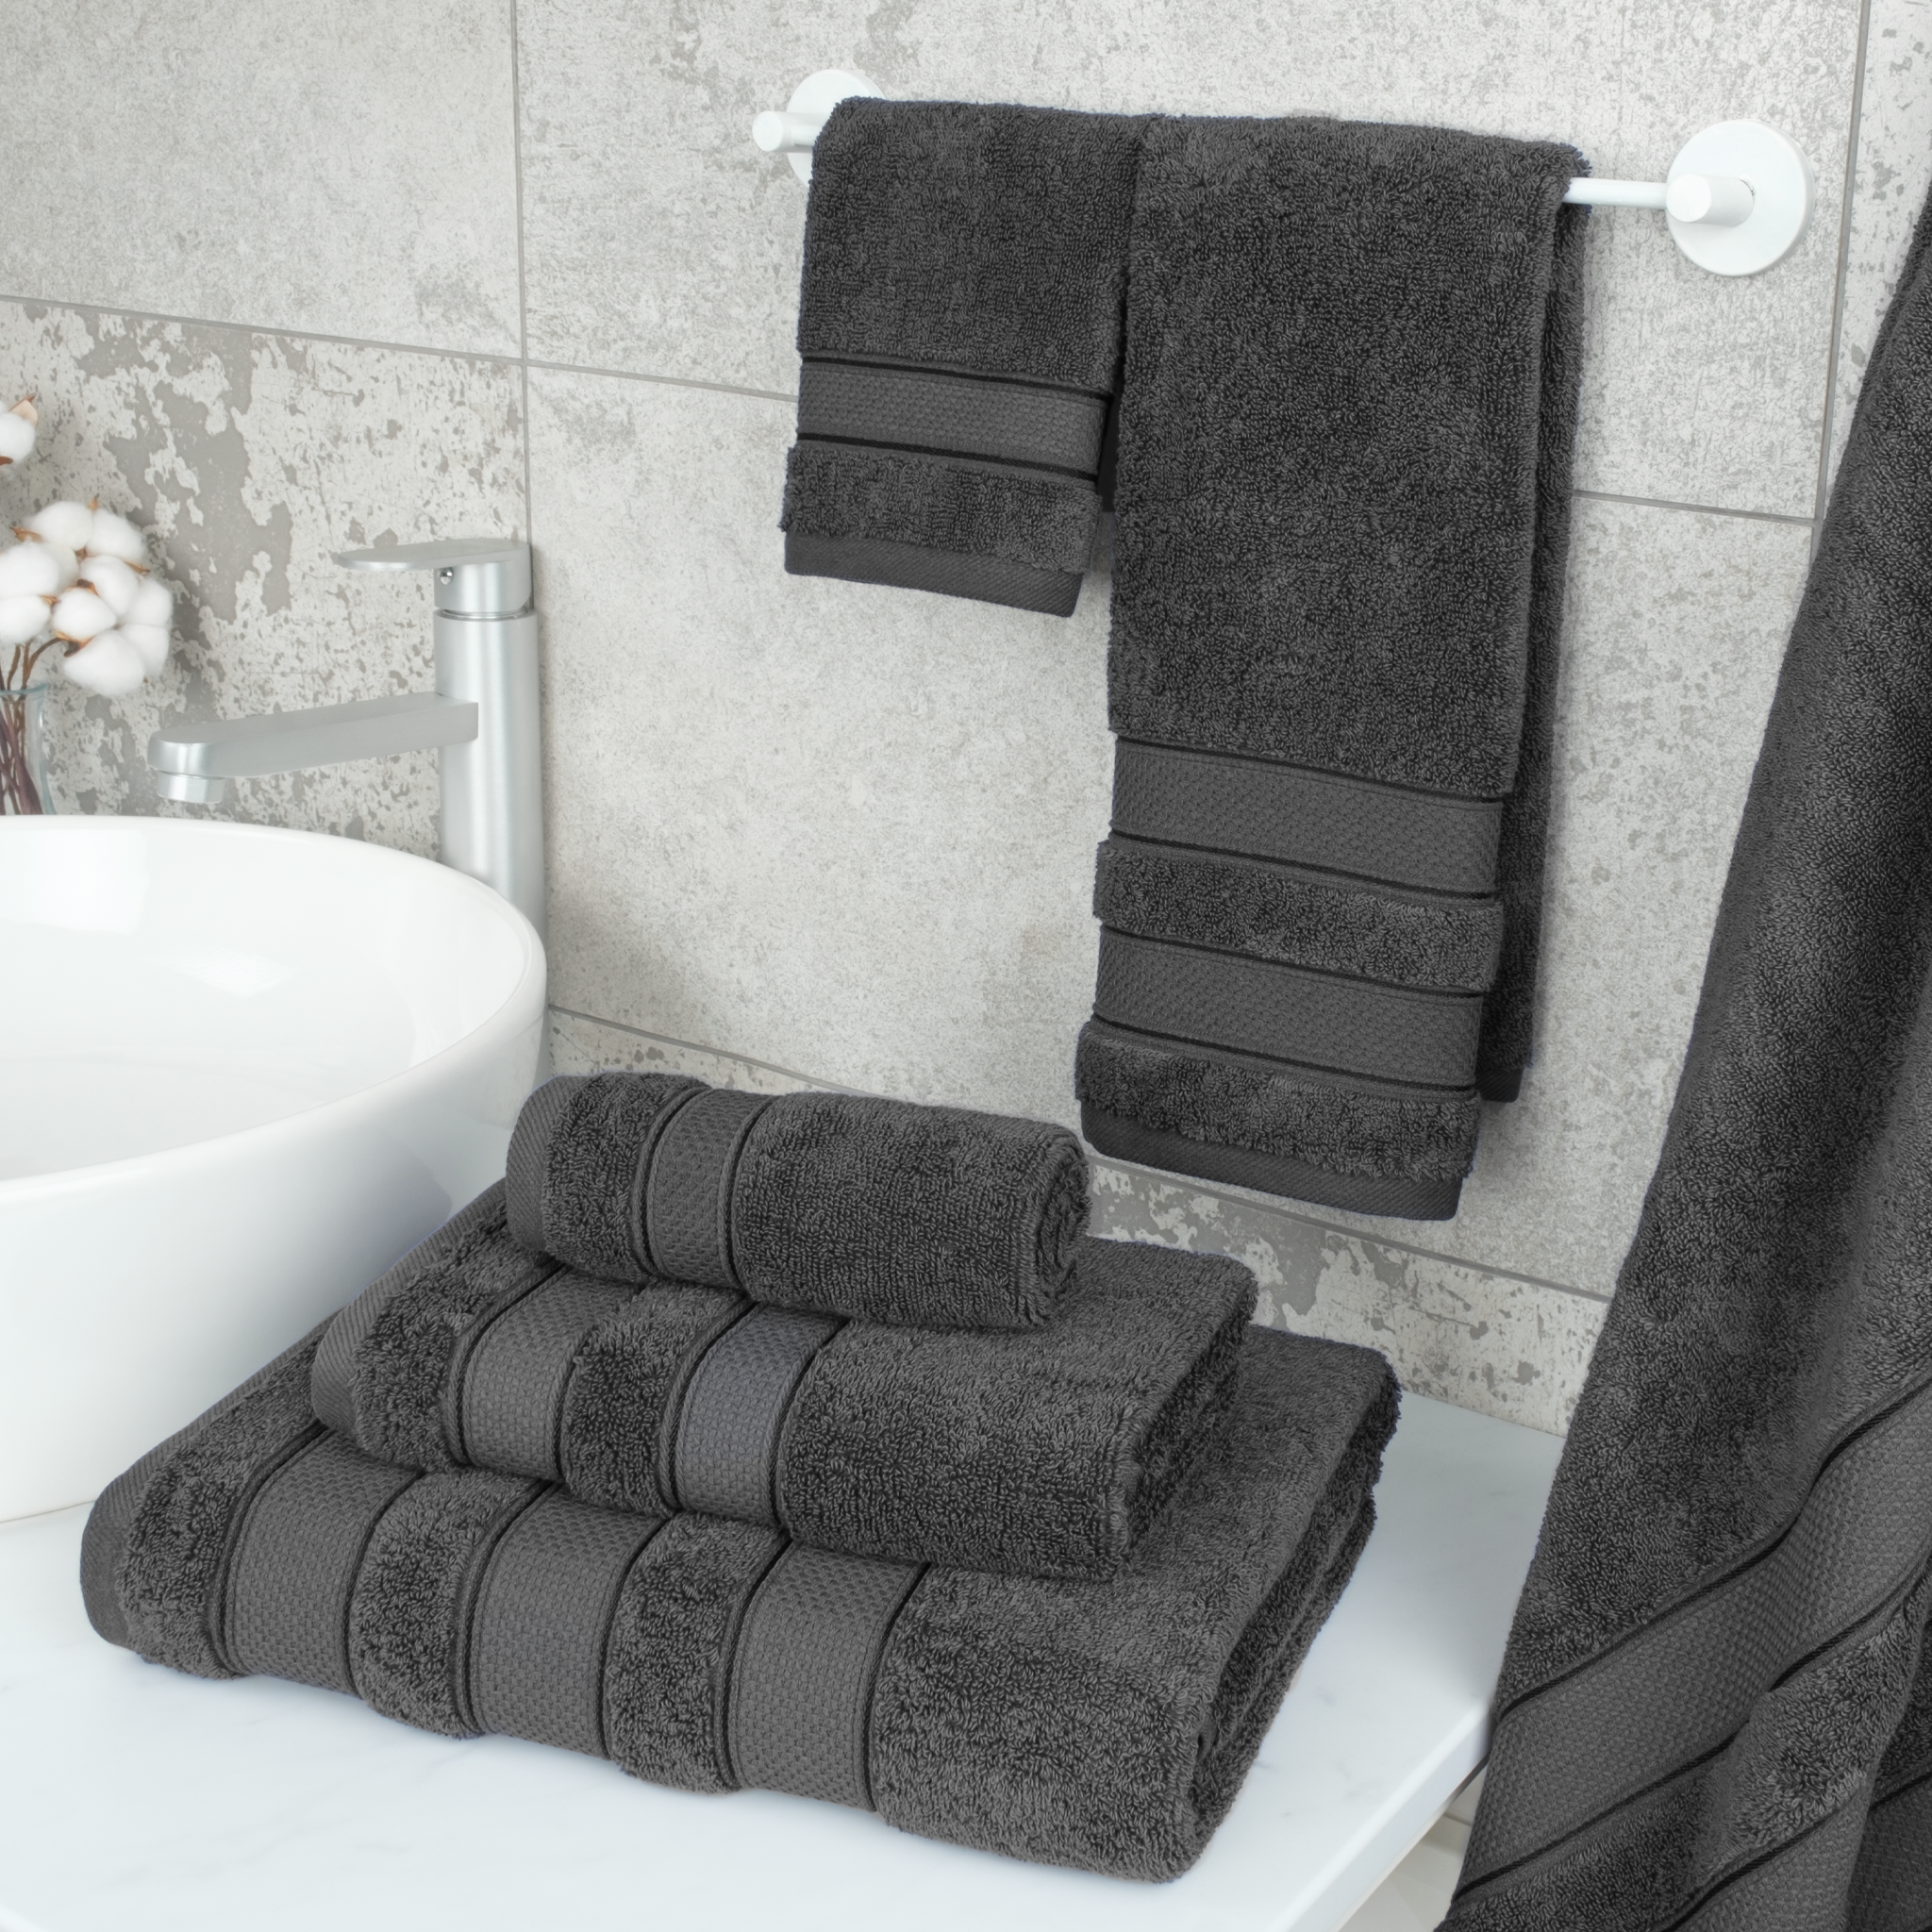 Hotel Vendome Spa Collection 100% Cotton 6-Piece Towel Set